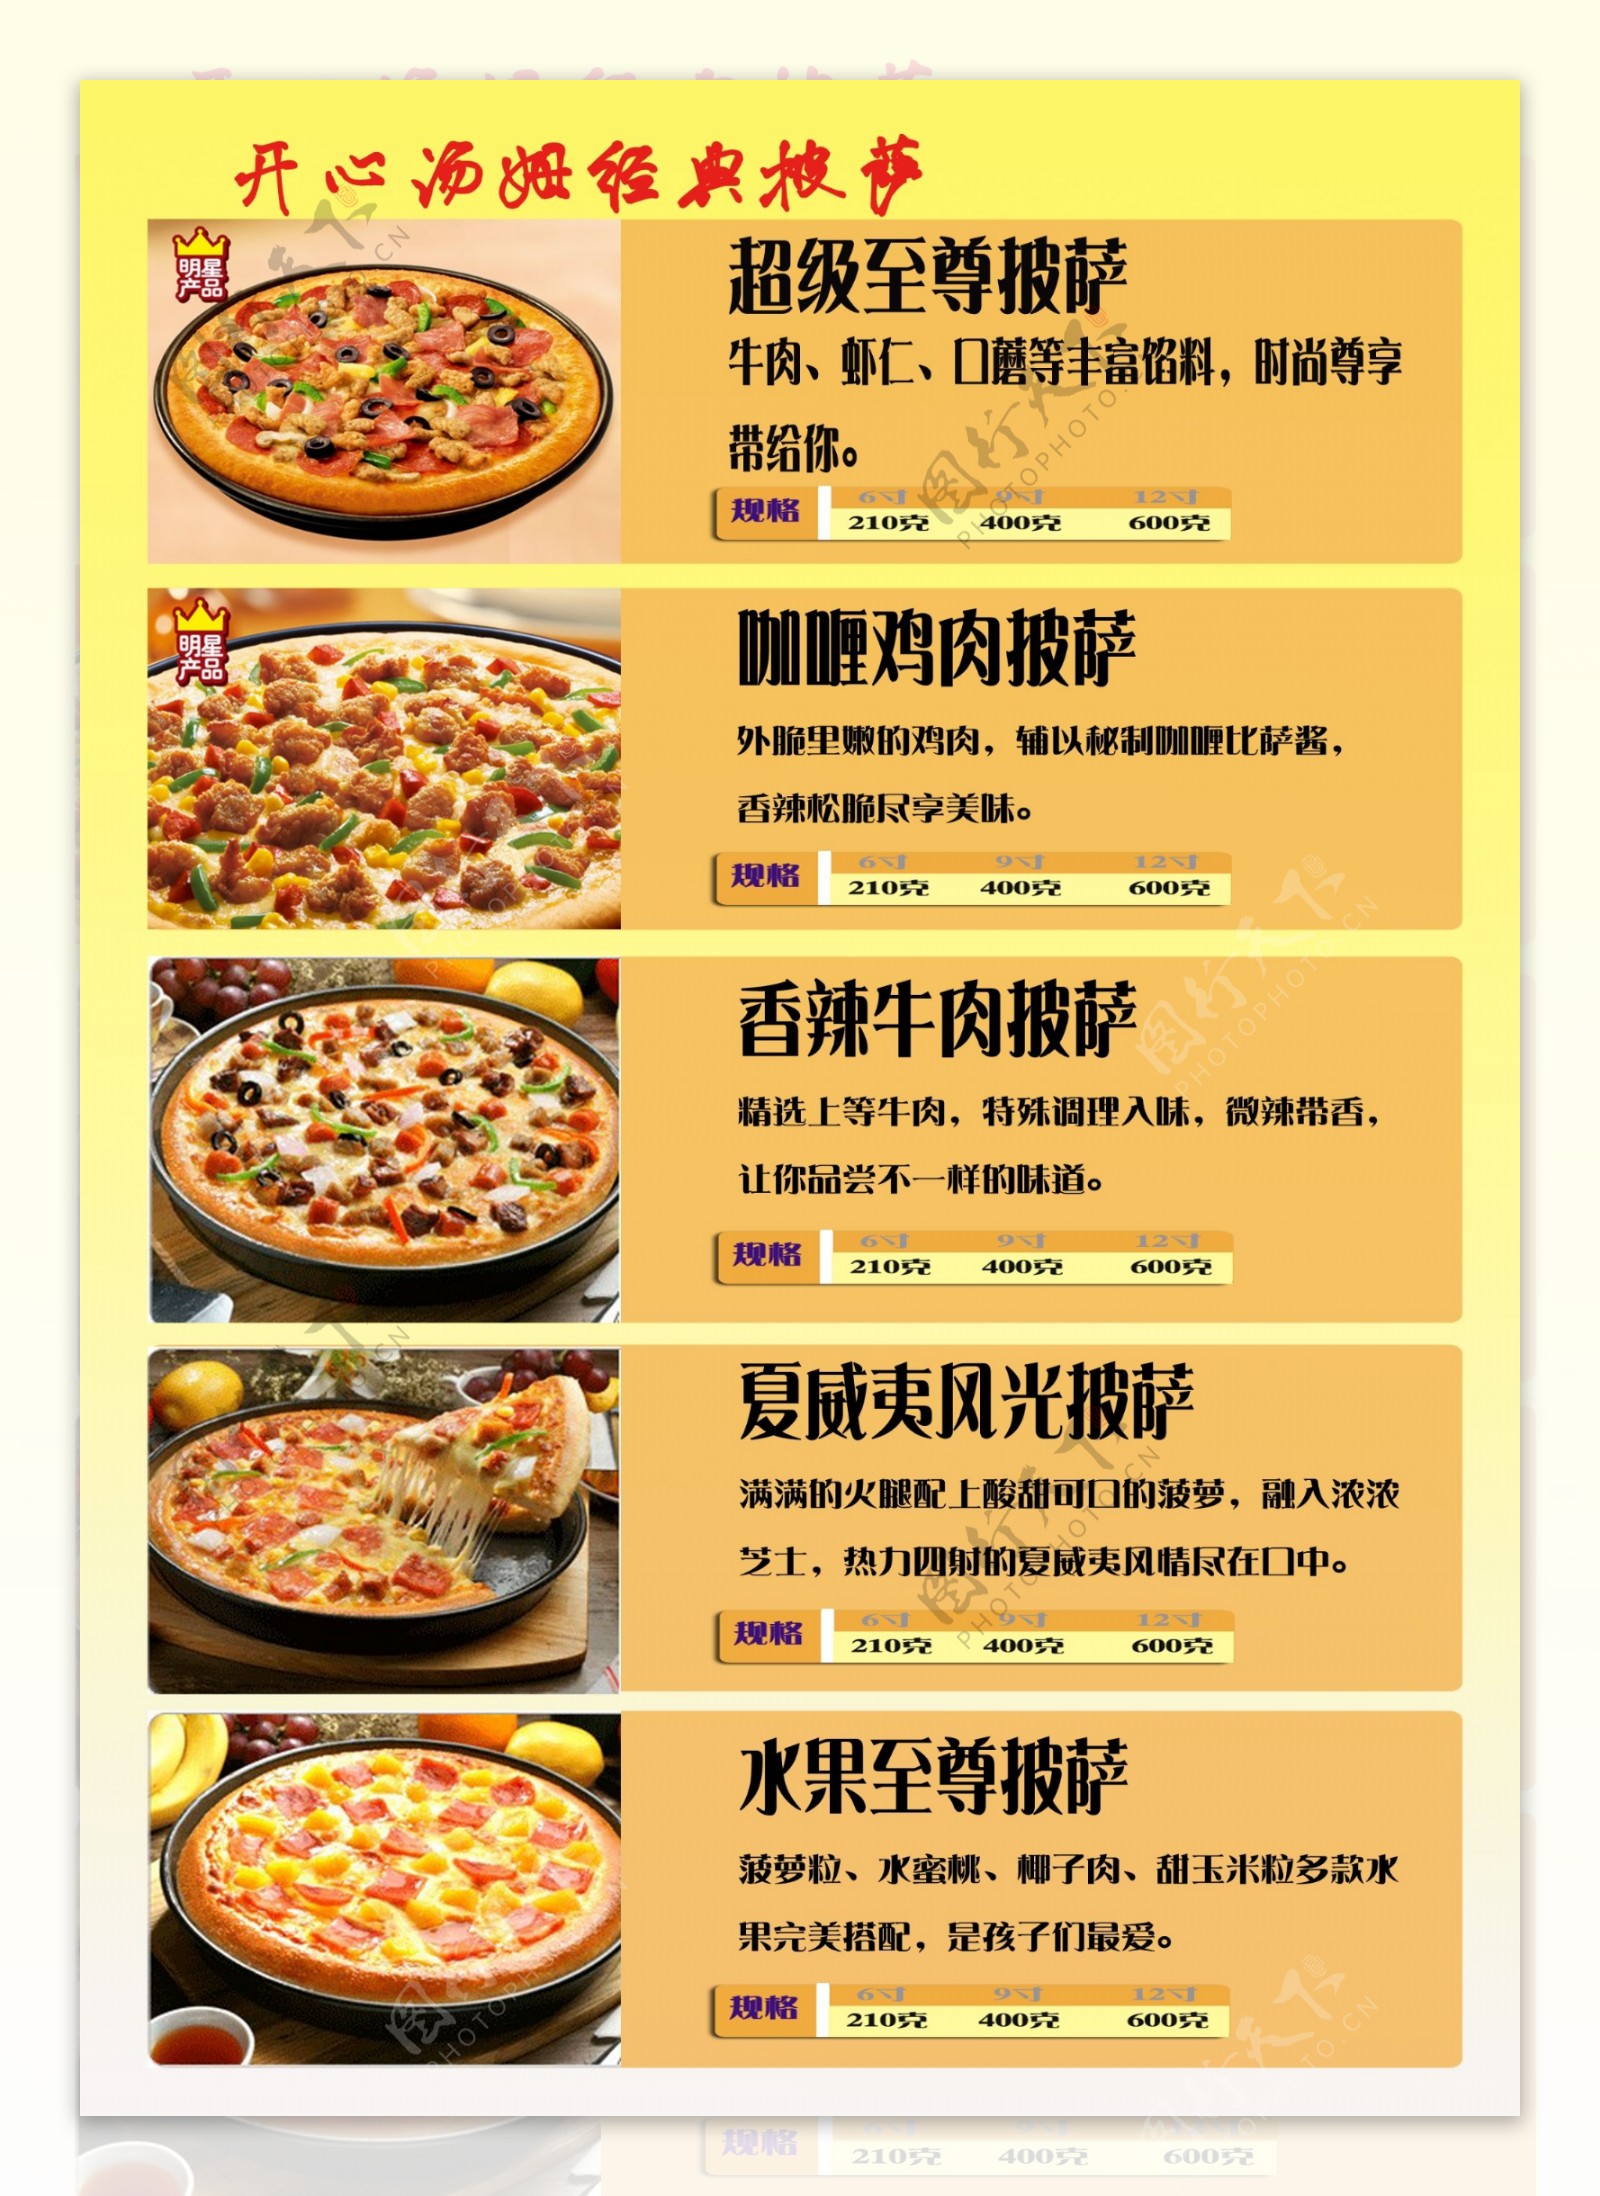 披萨菜单图片